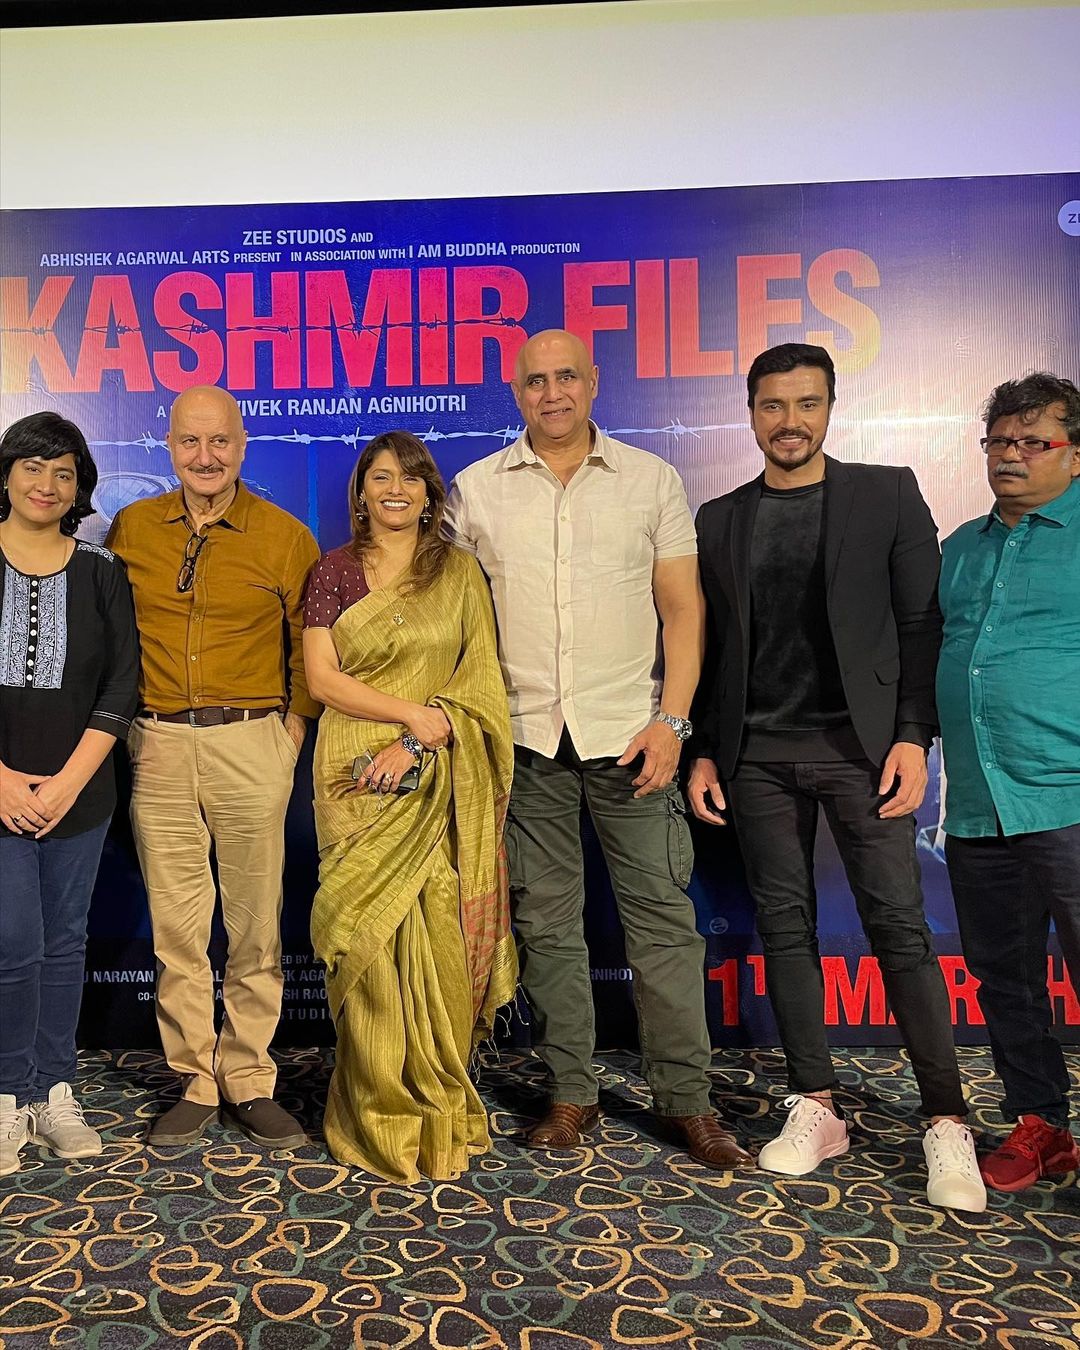 The Kashmiri Files Star Cast